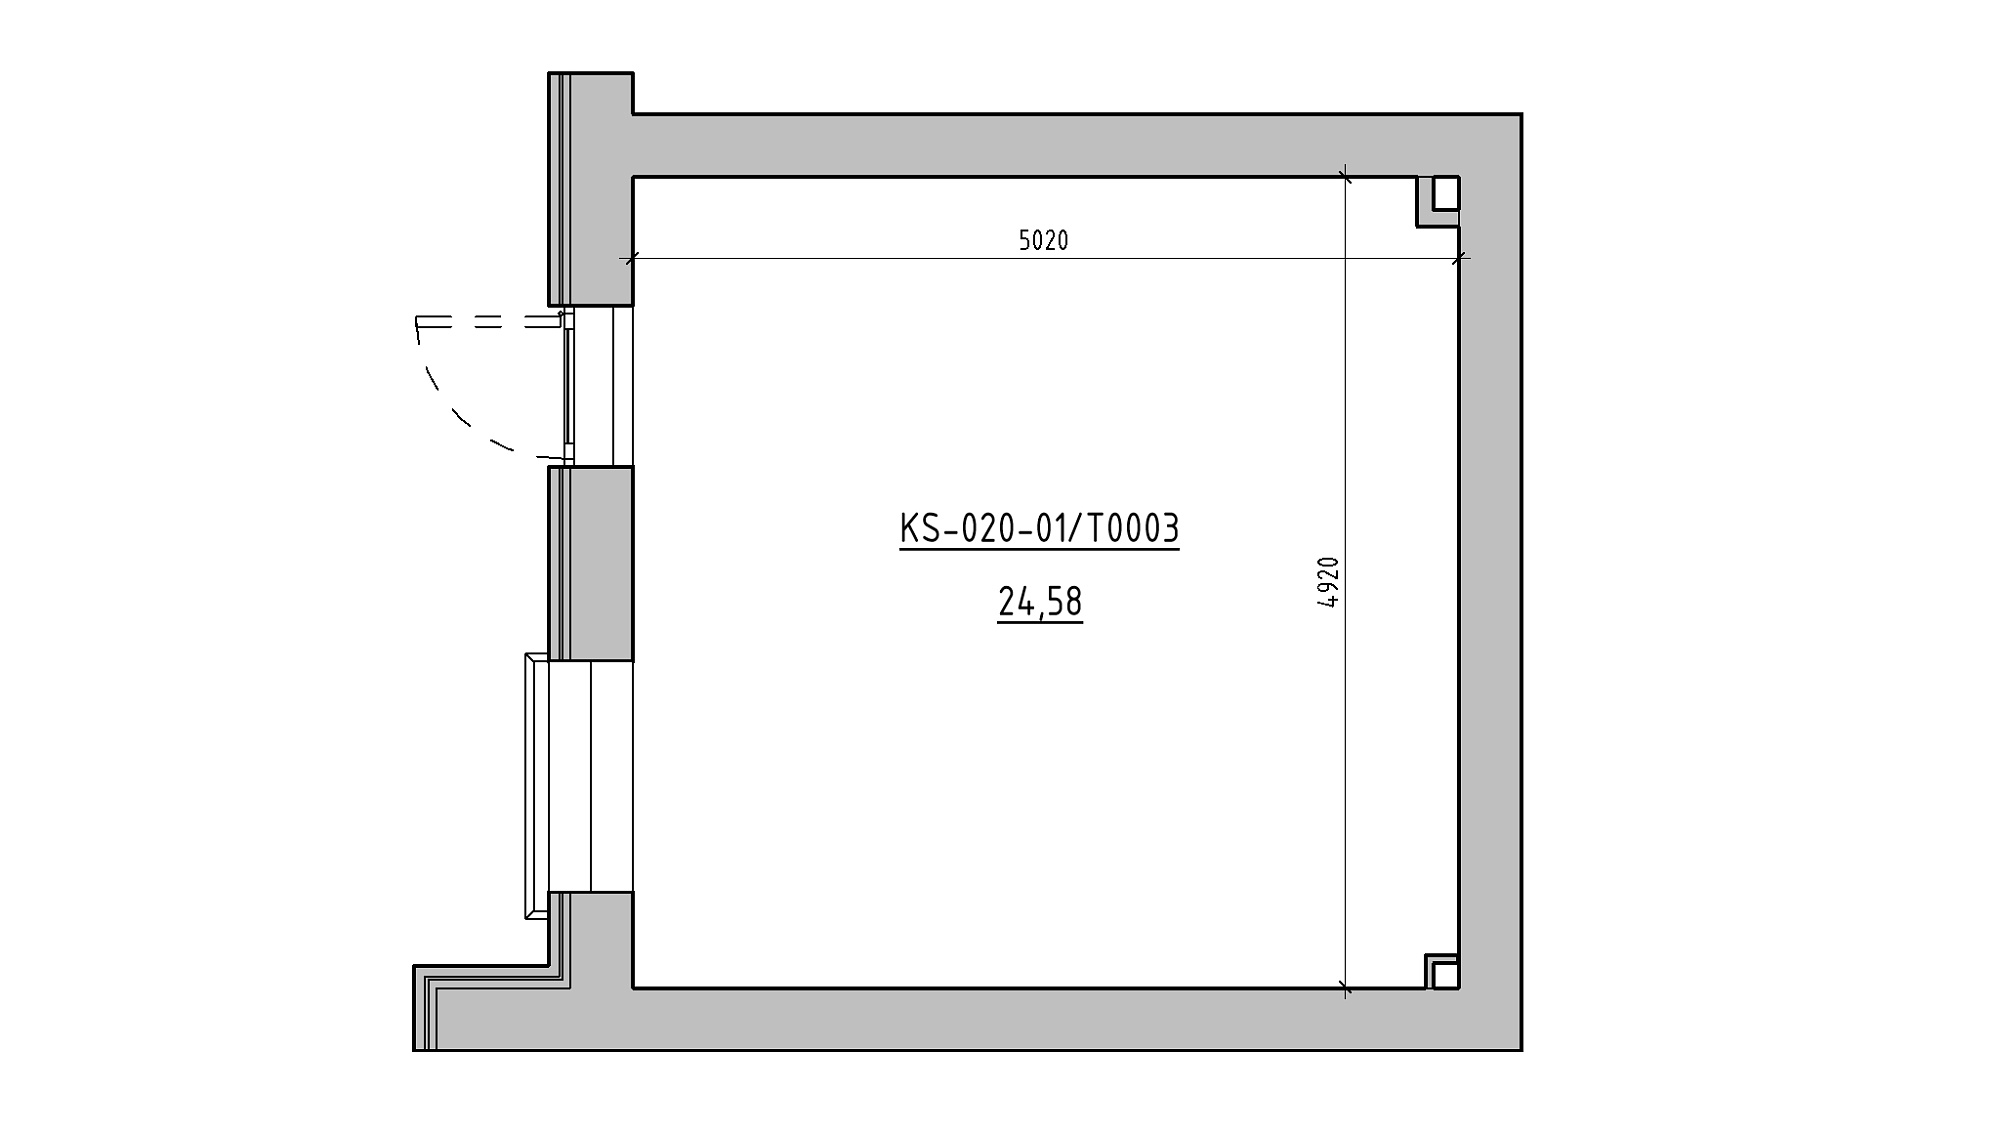 Планування Комерційні площею 24.58м2, KS-020-01/Т003.